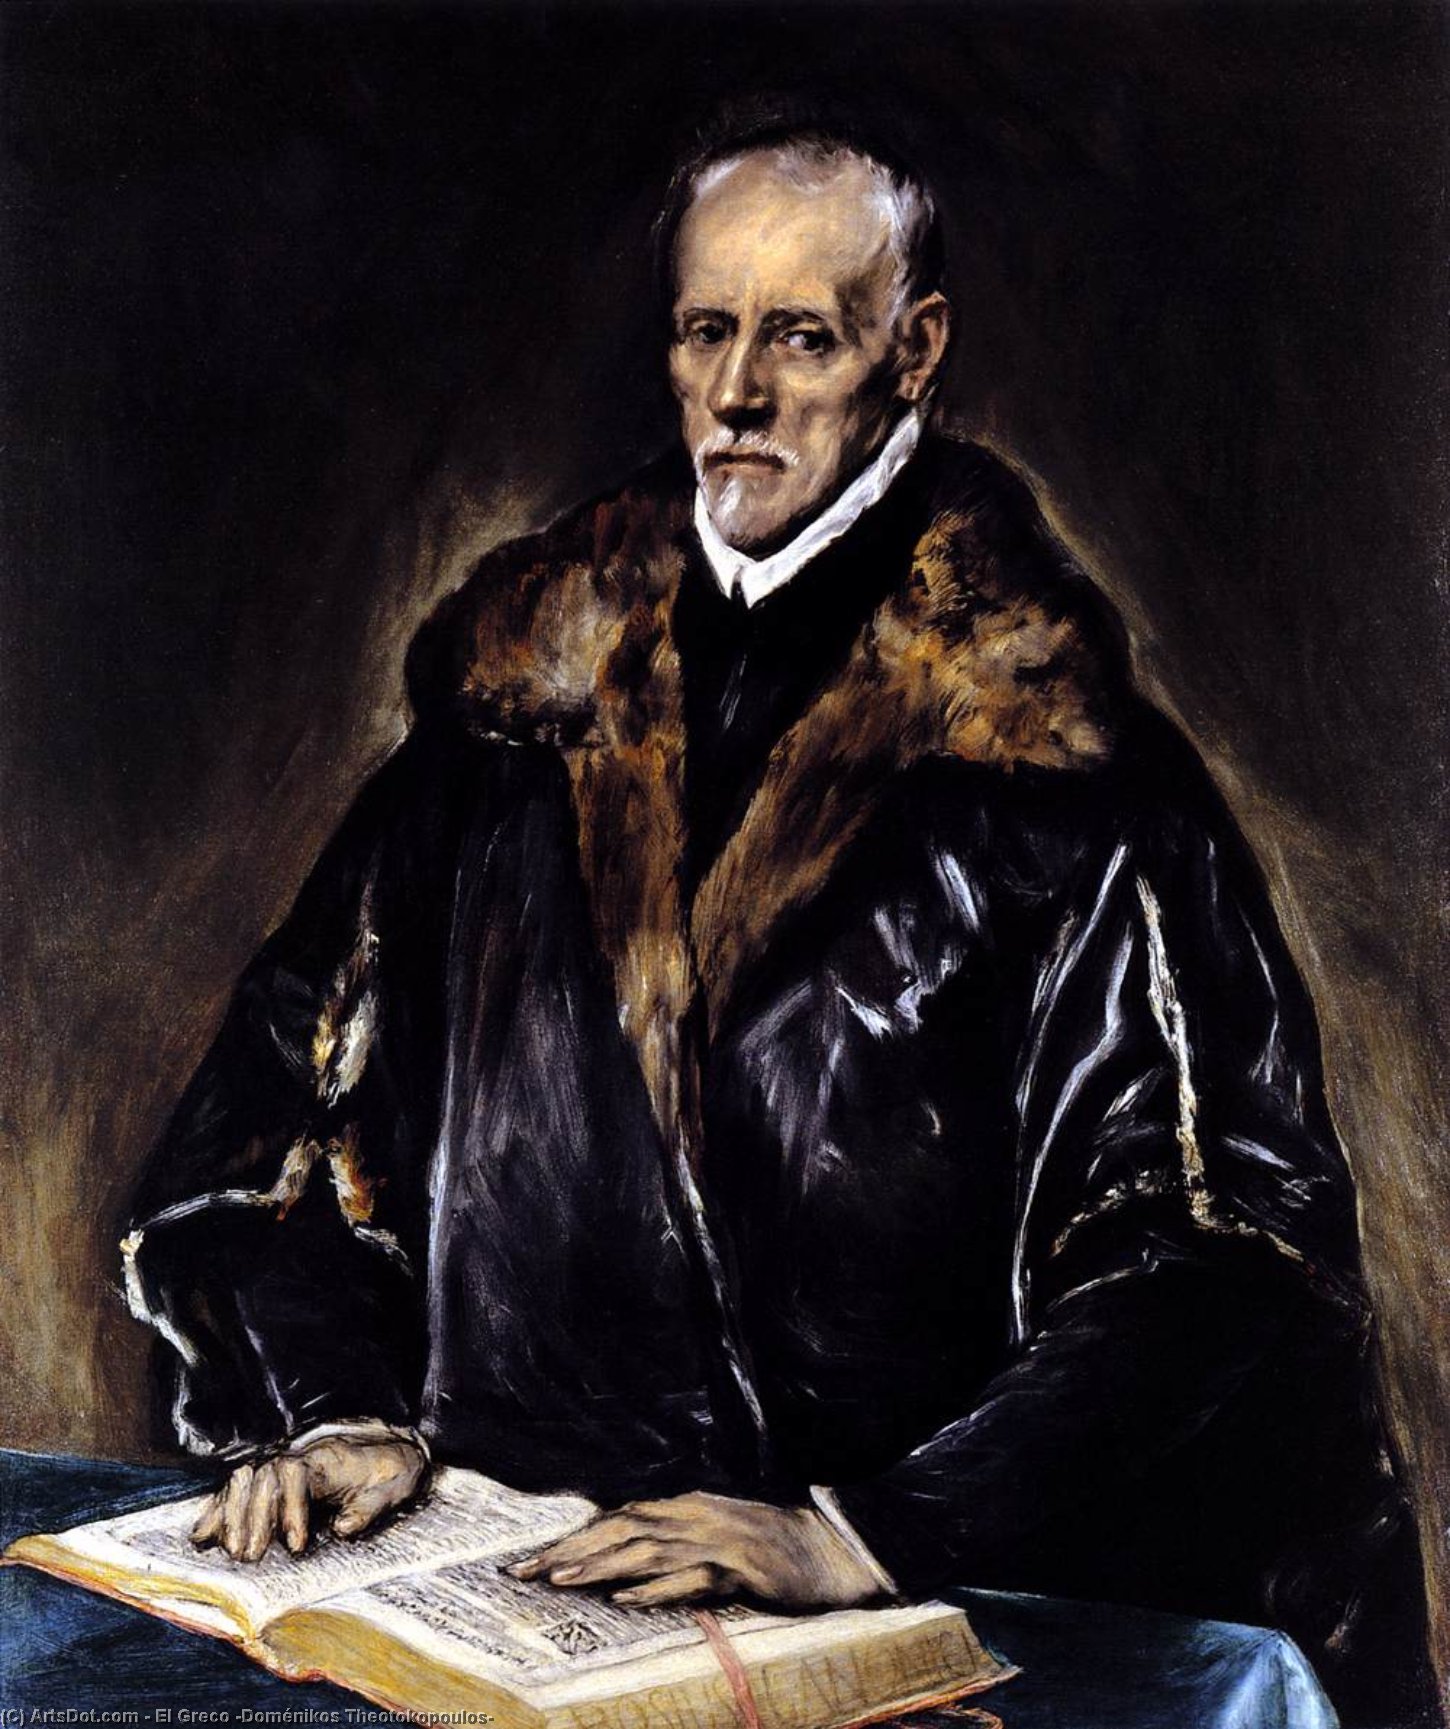 WikiOO.org - Encyclopedia of Fine Arts - Maleri, Artwork El Greco (Doménikos Theotokopoulos) - A Prelate